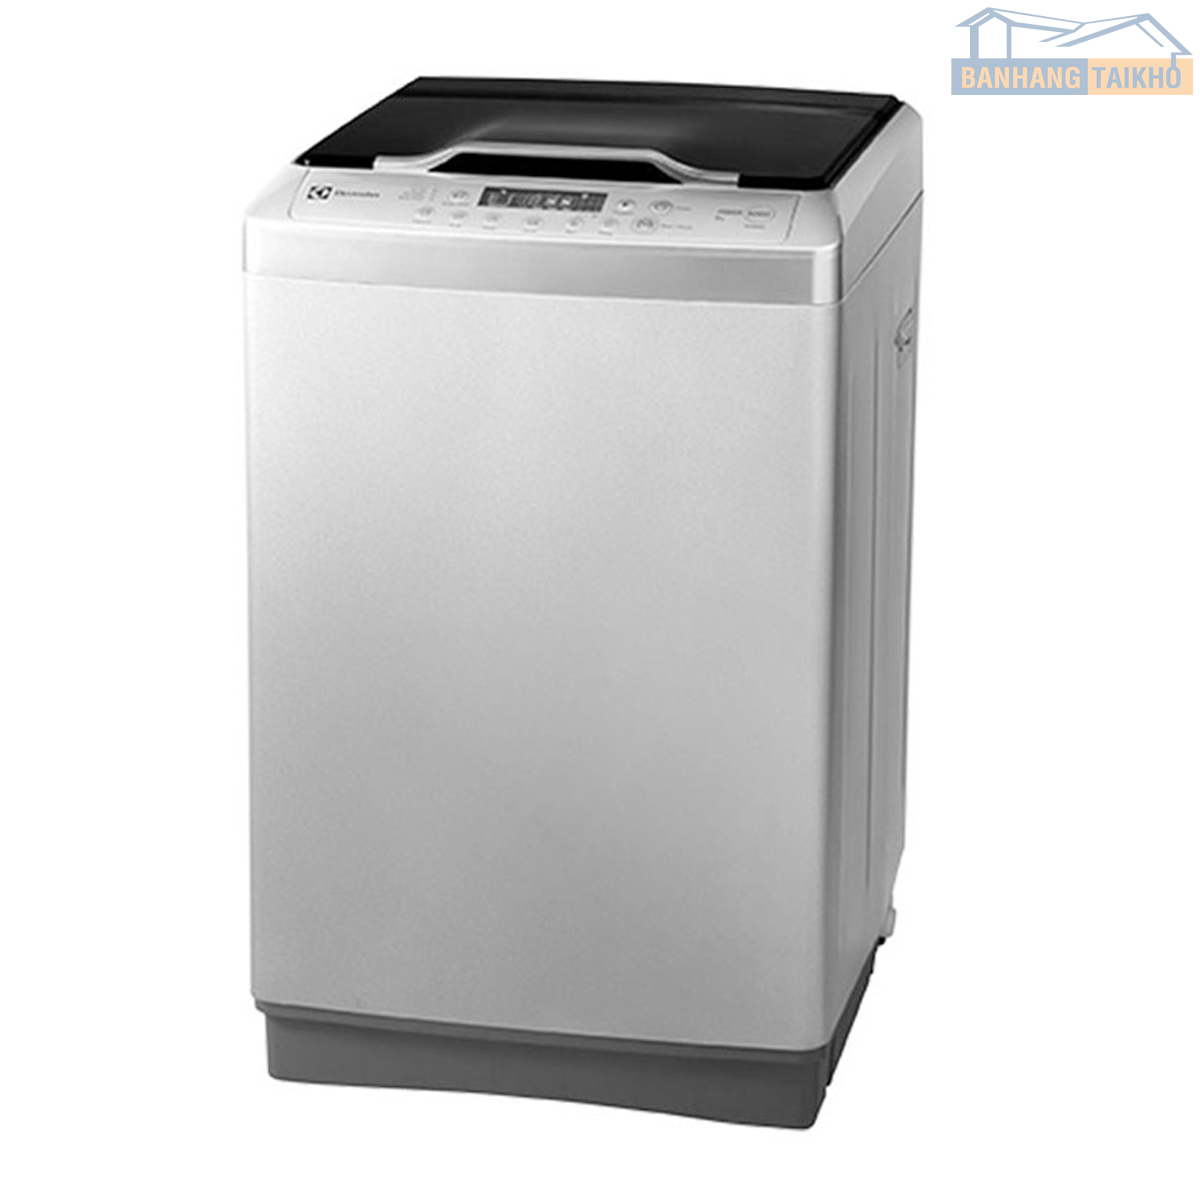 Máy giặt Electrolux 9kg: giặt hơi nước, giặt nước nóng diệt khuẩn  (EWF9025BQWA) • Điện máy XANH - YouTube